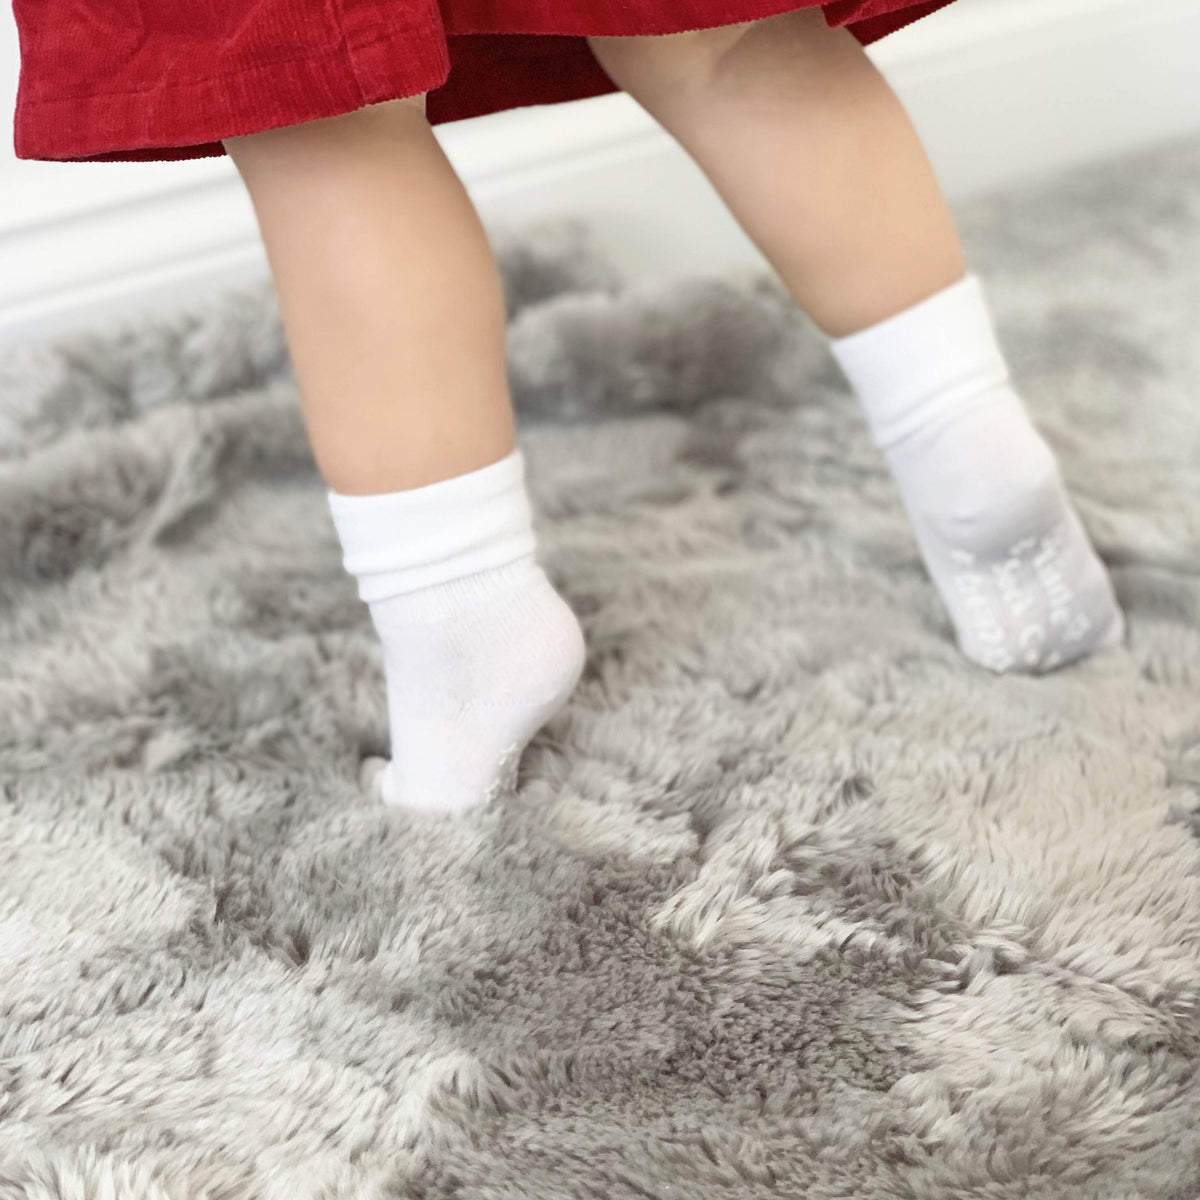 Non-Slip Stay on Baby and Toddler Socks - Plain White